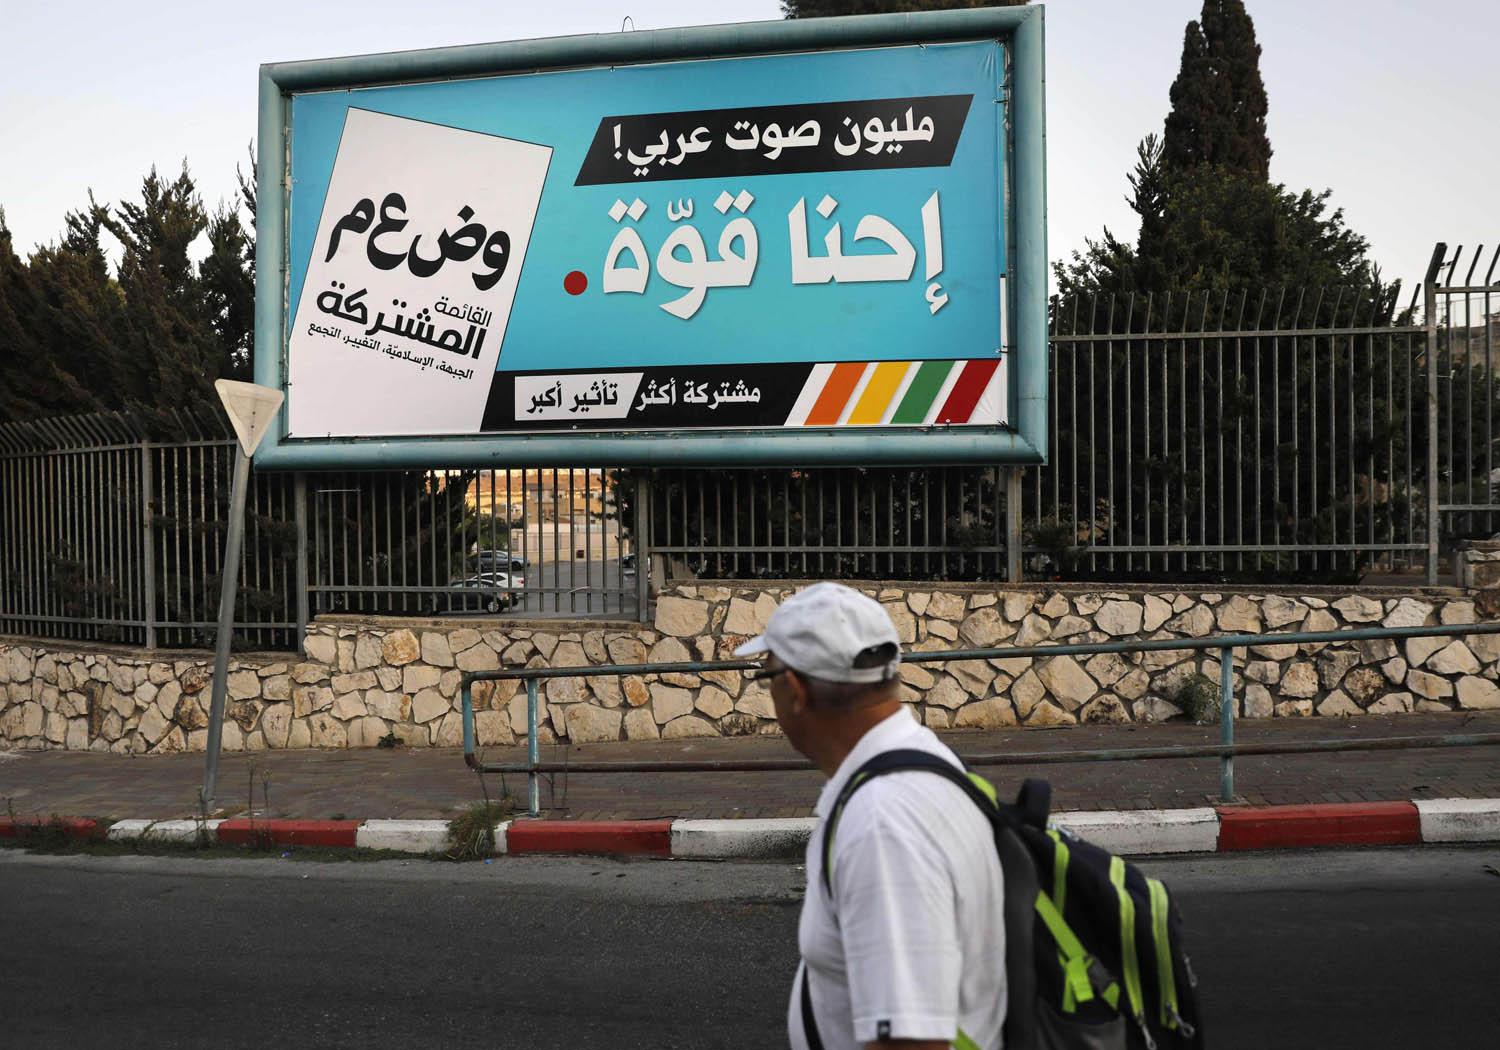 فلسطيني يمر بجانب اعلان للتصويت في الانتخابات الاسرائيلية